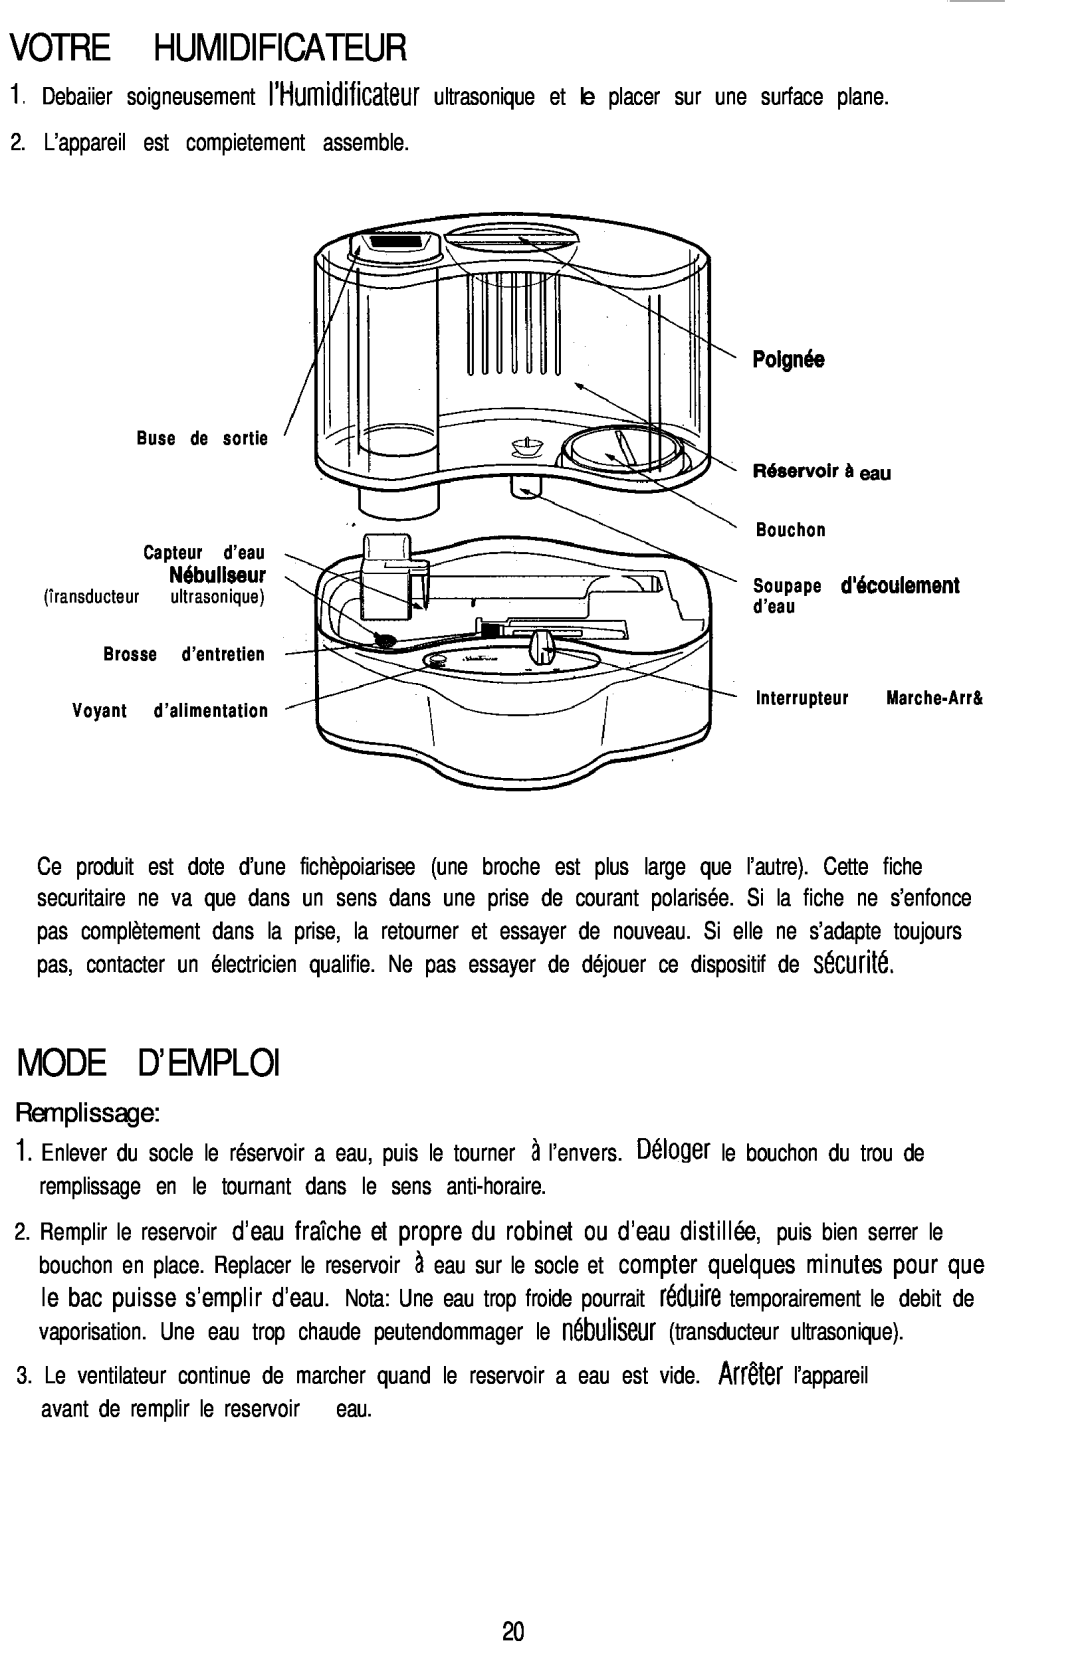 Sunbeam 696 instruction manual Votre Humidificateur, Mode D’Emploi, Remplissage 